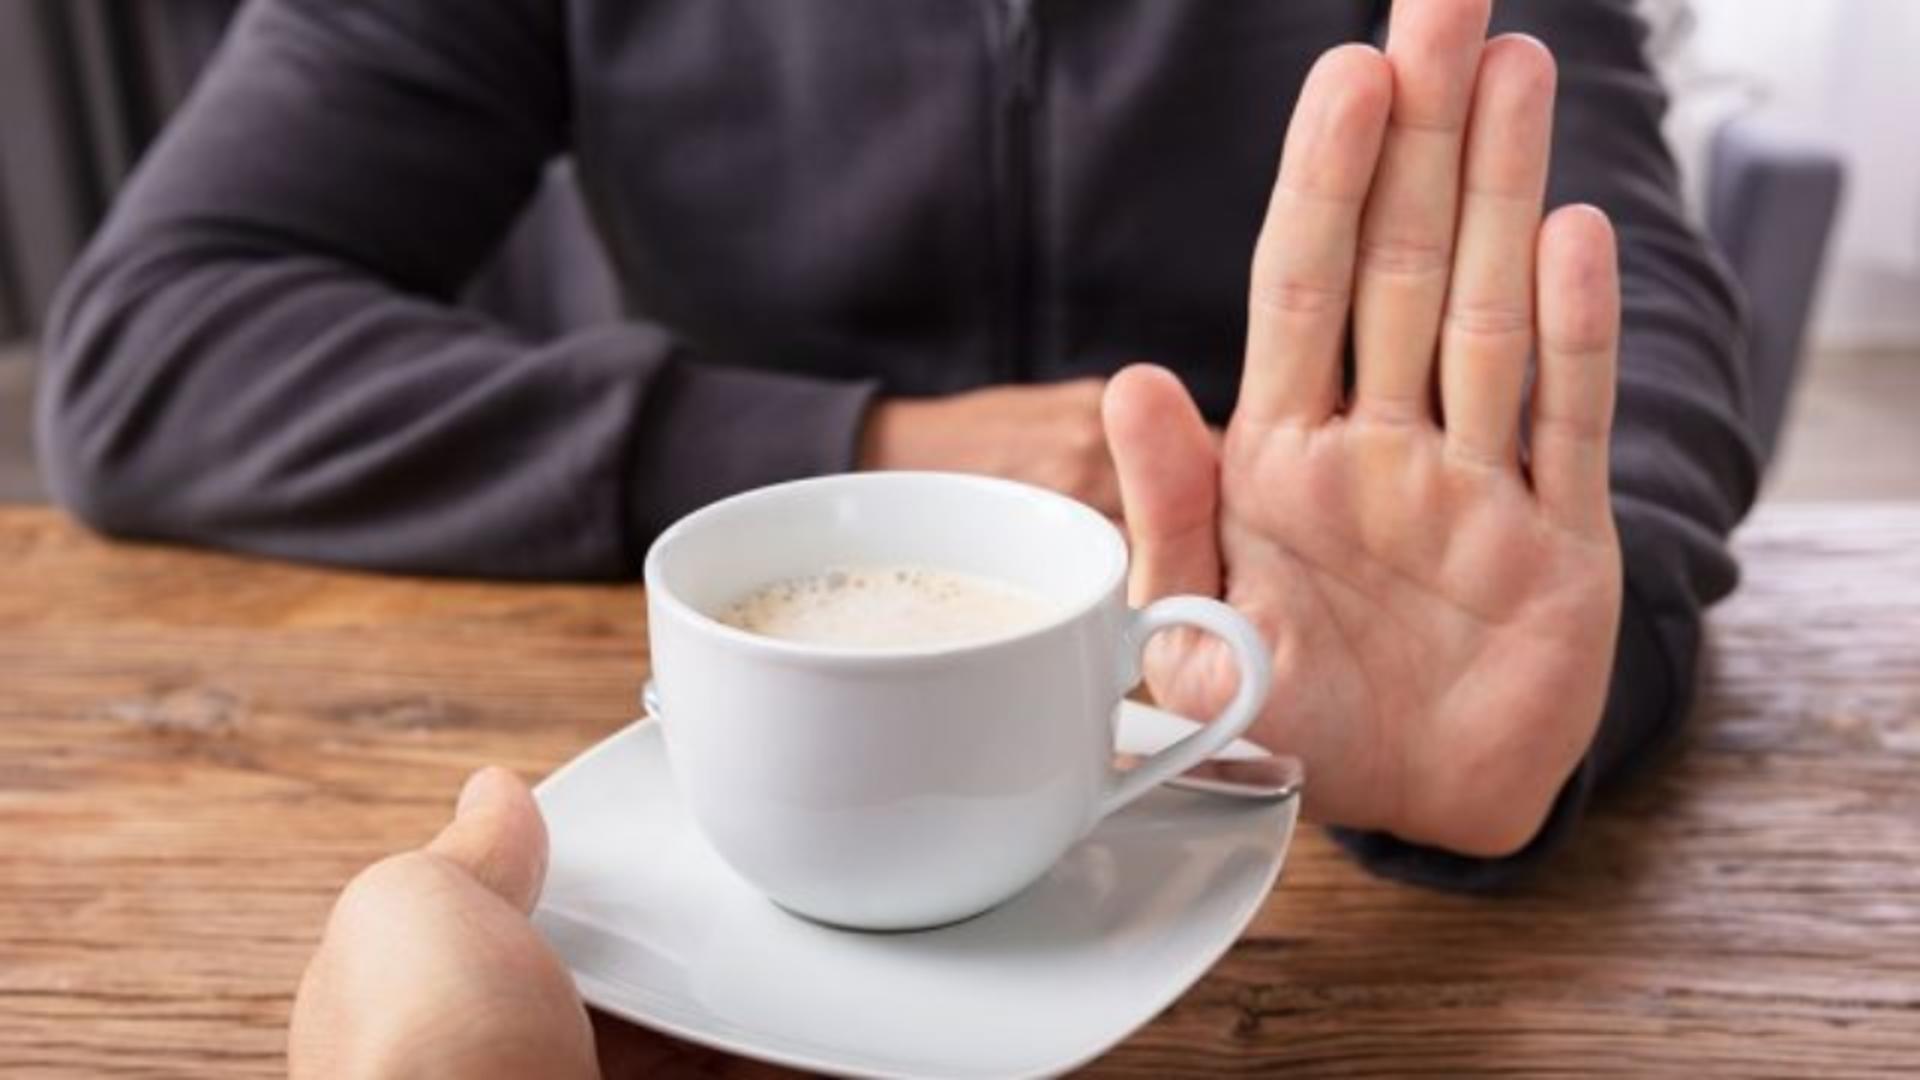 Cafeaua decofeinizată – o variantă demnă de luat în seamă. 4 motive serioase pentru care ar trebui să renunți la cofeină